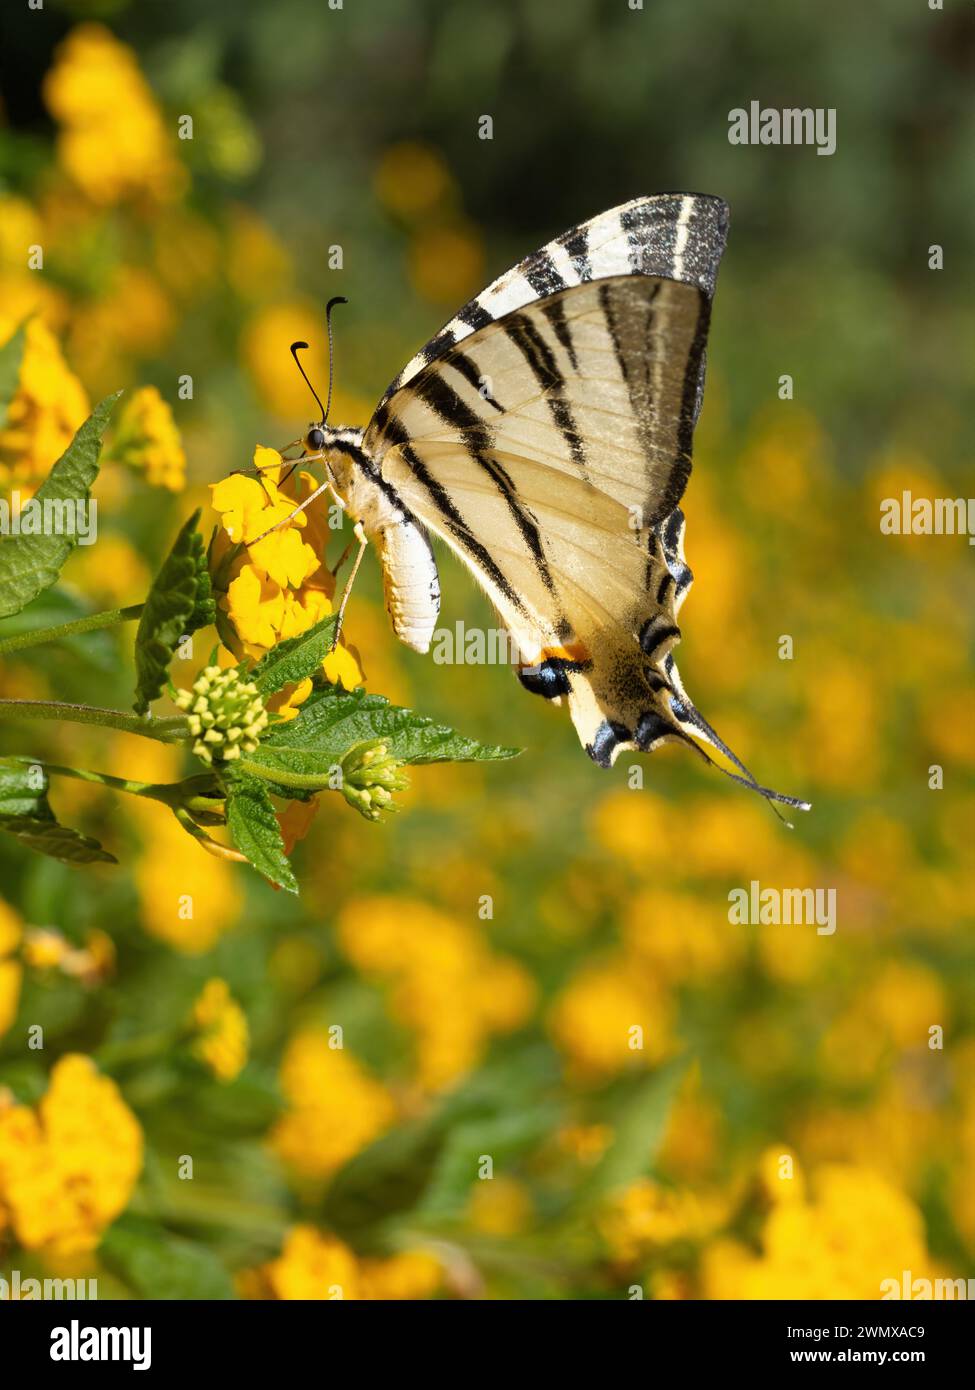 Le papillon à queue d'aronde (Iphiclides podalirius) boit du nectar et pollinise les fleurs de haie jaune (lantana depressa). Super macro. Extrême clos Banque D'Images